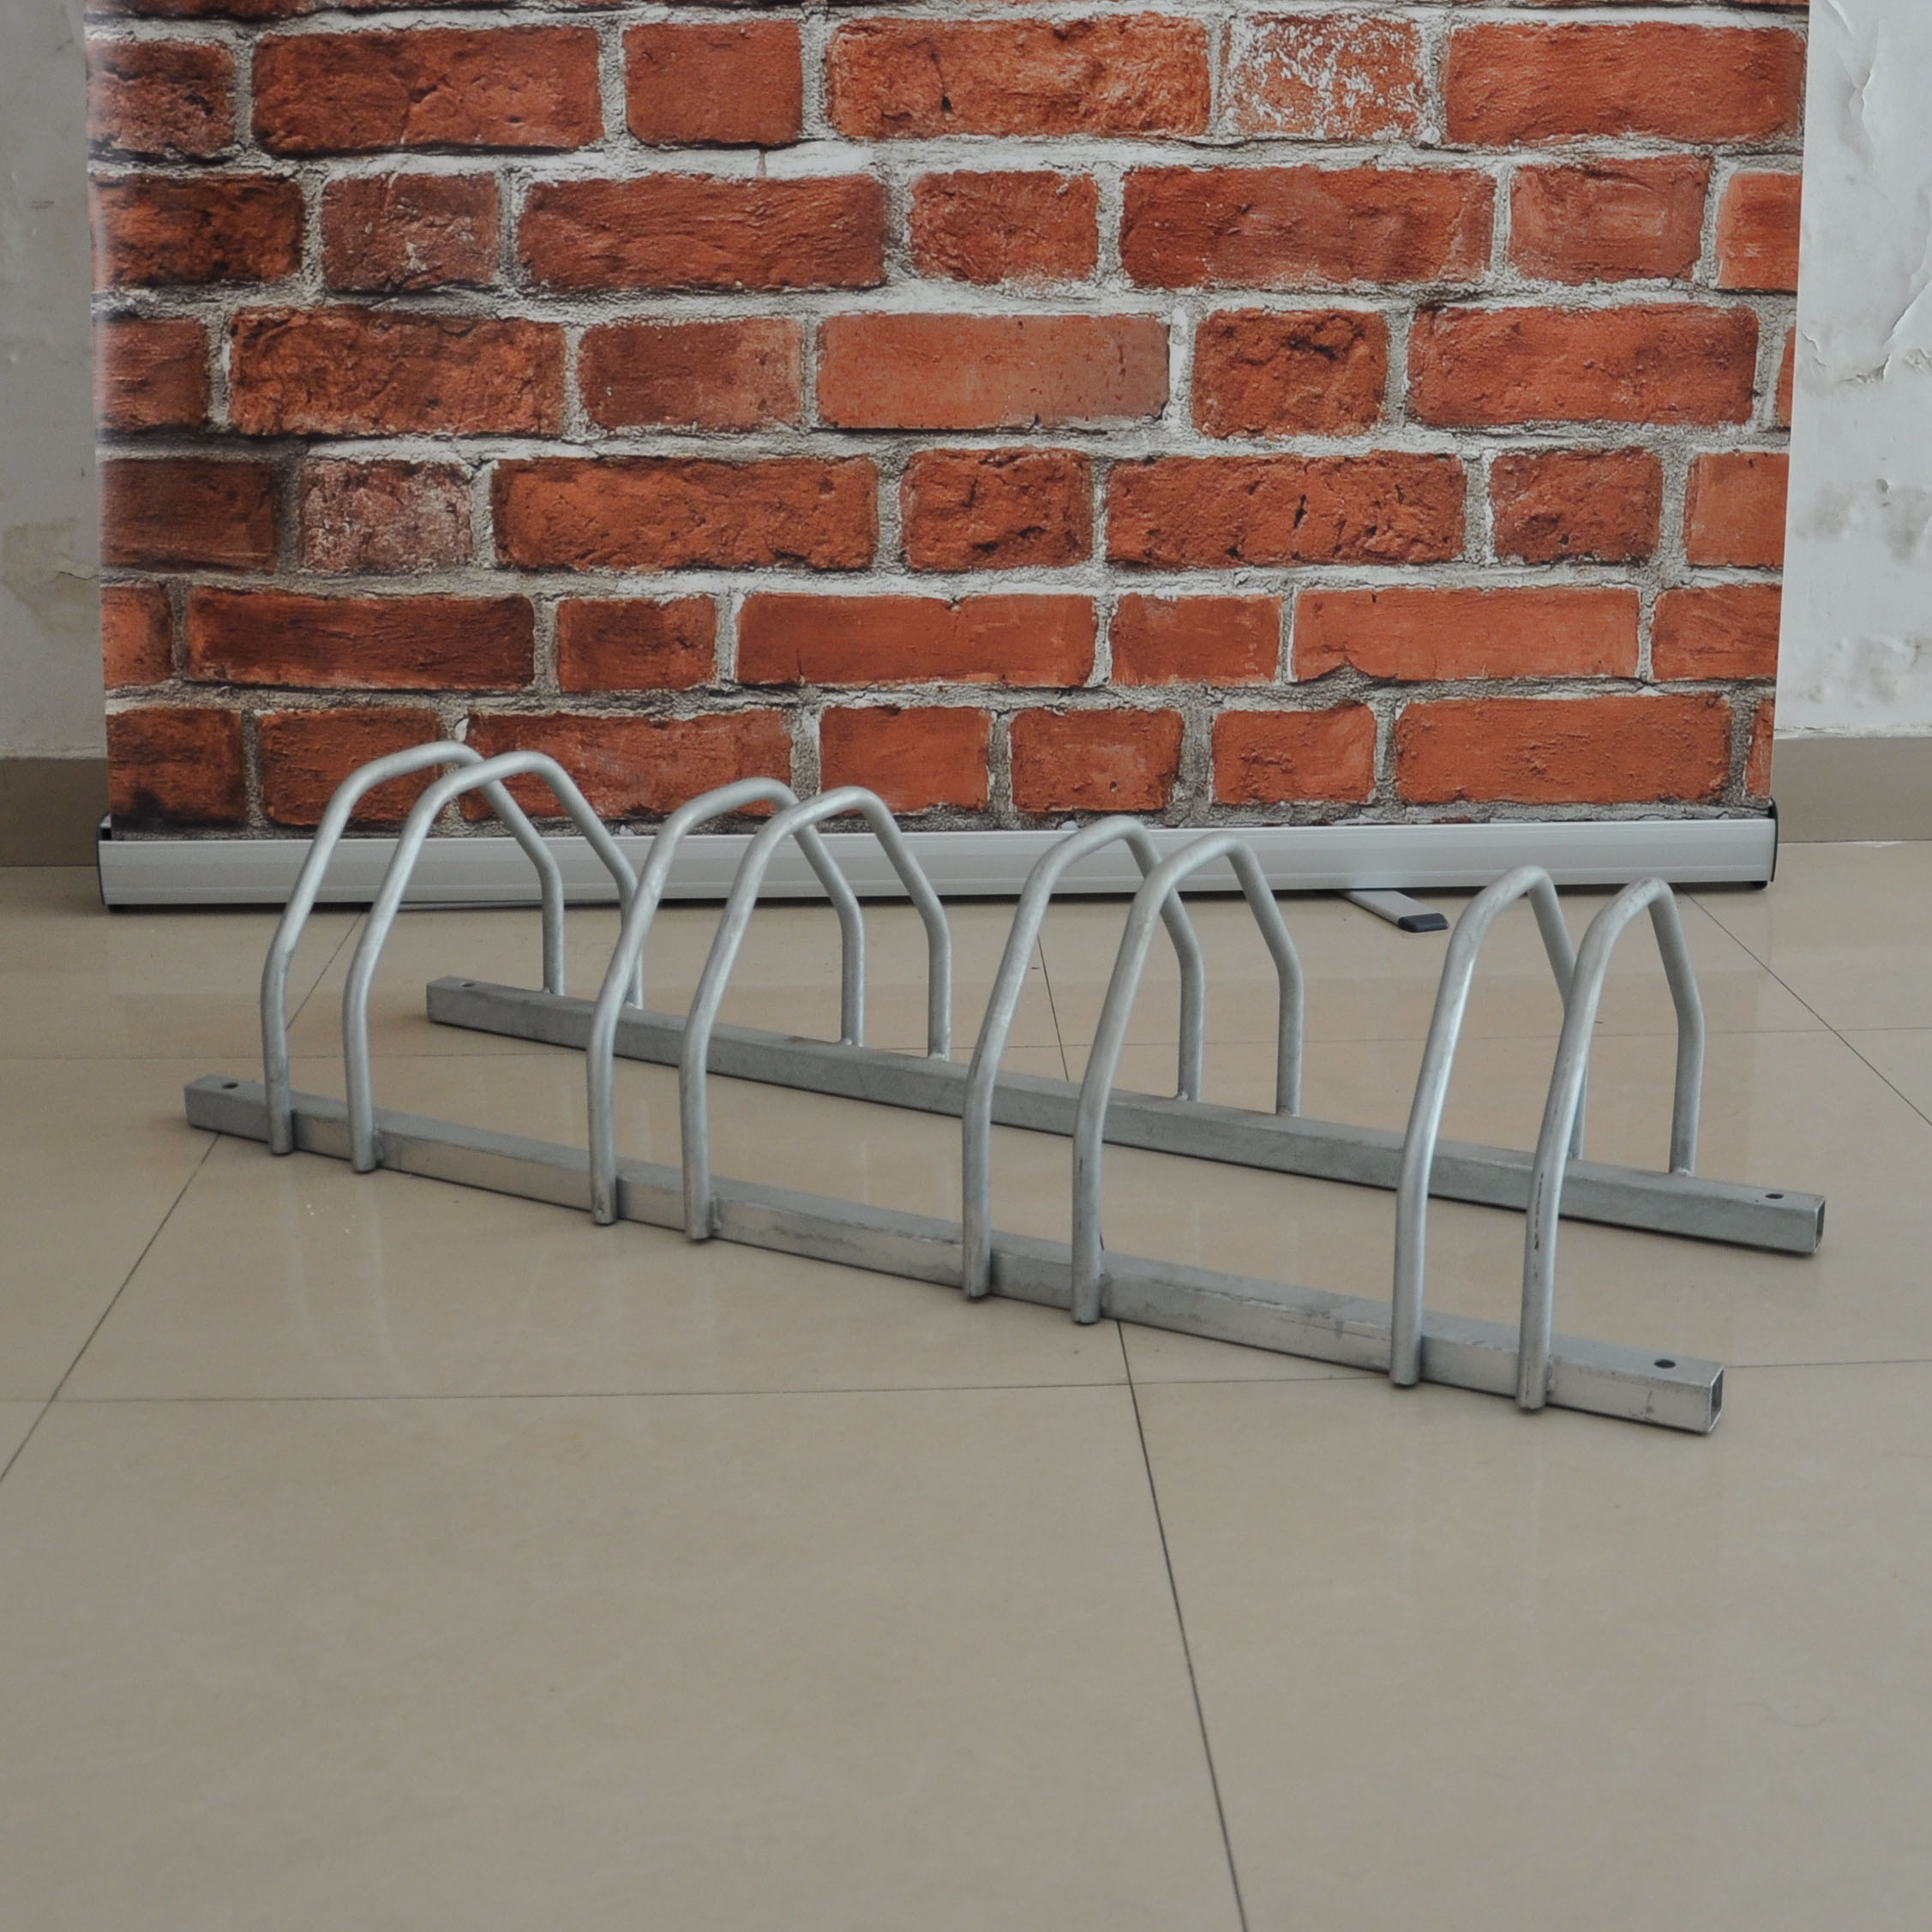 Portabicicletas de capacidad múltiple Portabicicletas múltiple para 4 bicicletas con almacenamiento